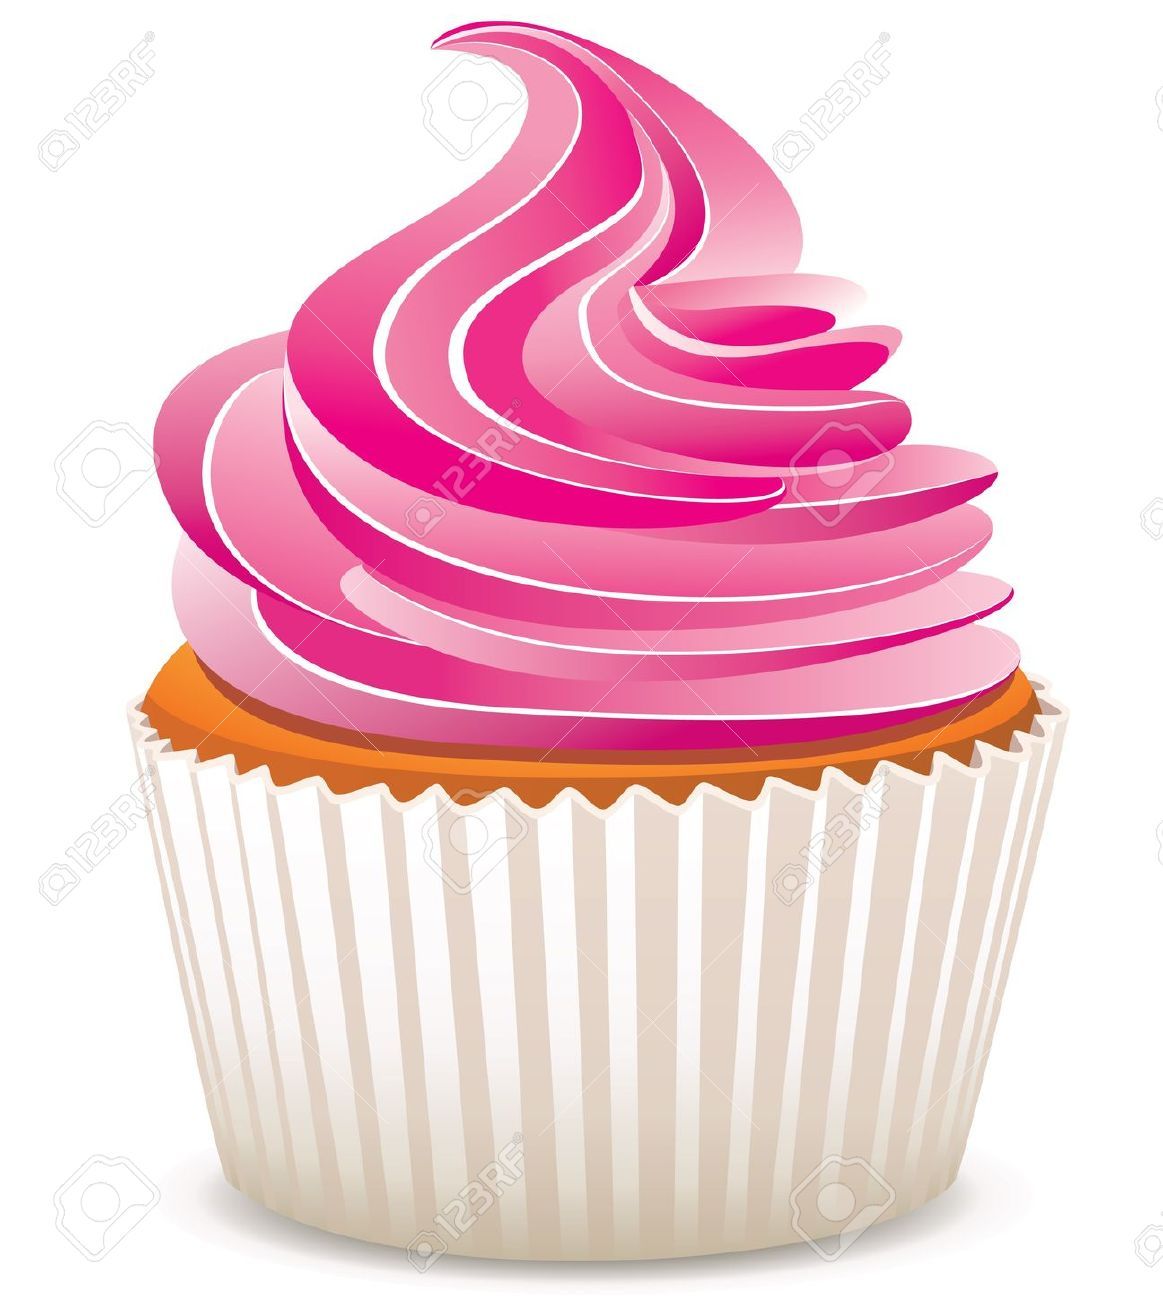 Download pink cupcake.